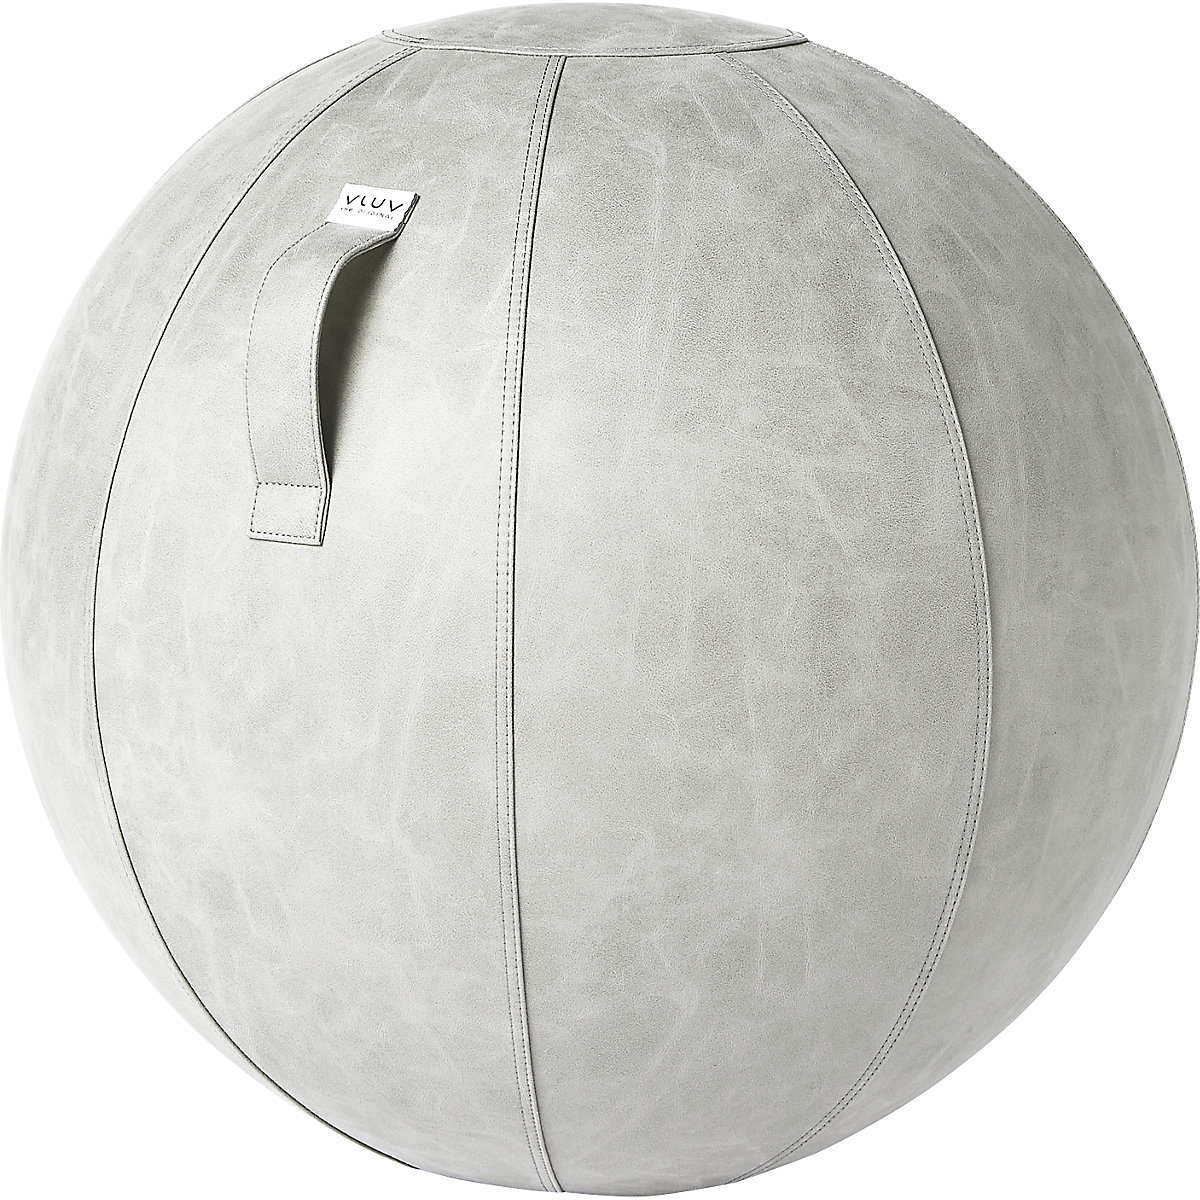 Ballon suisse VEGA – VLUV, similicuir végétalien, 700 – 750 mm, ciment-7